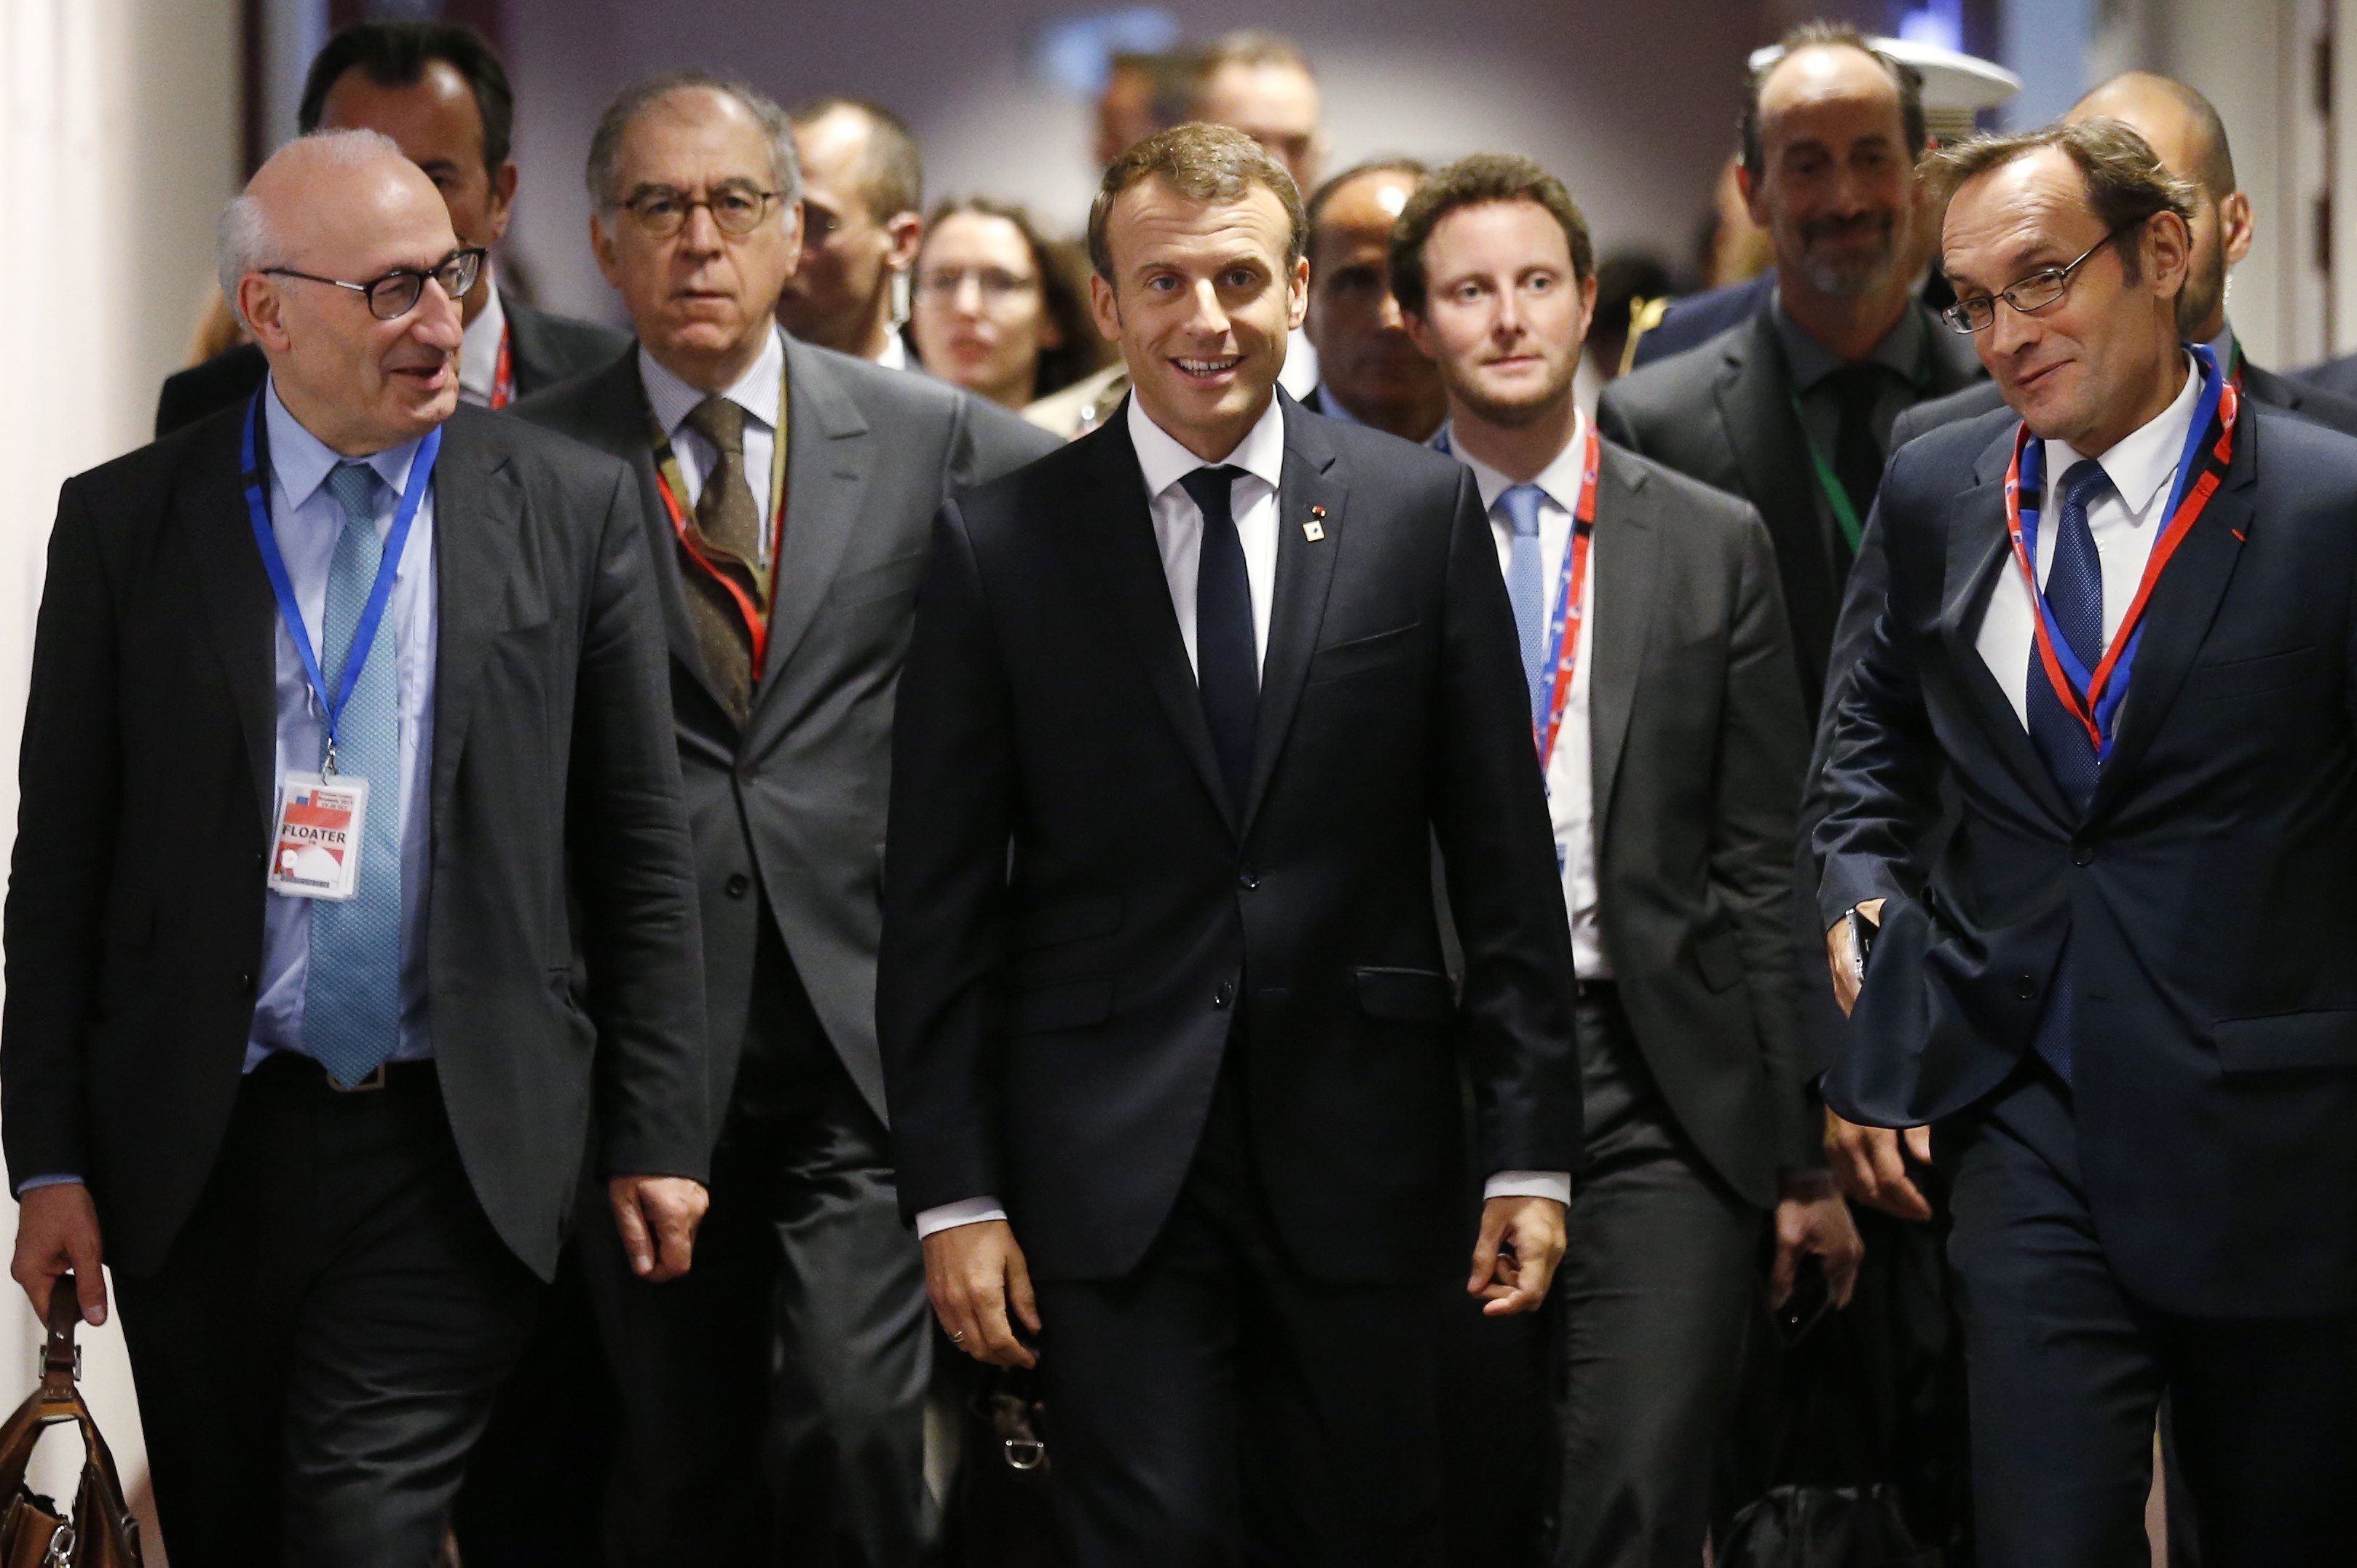 Macron asegura que Europa dará un mensaje de unidad con Rajoy